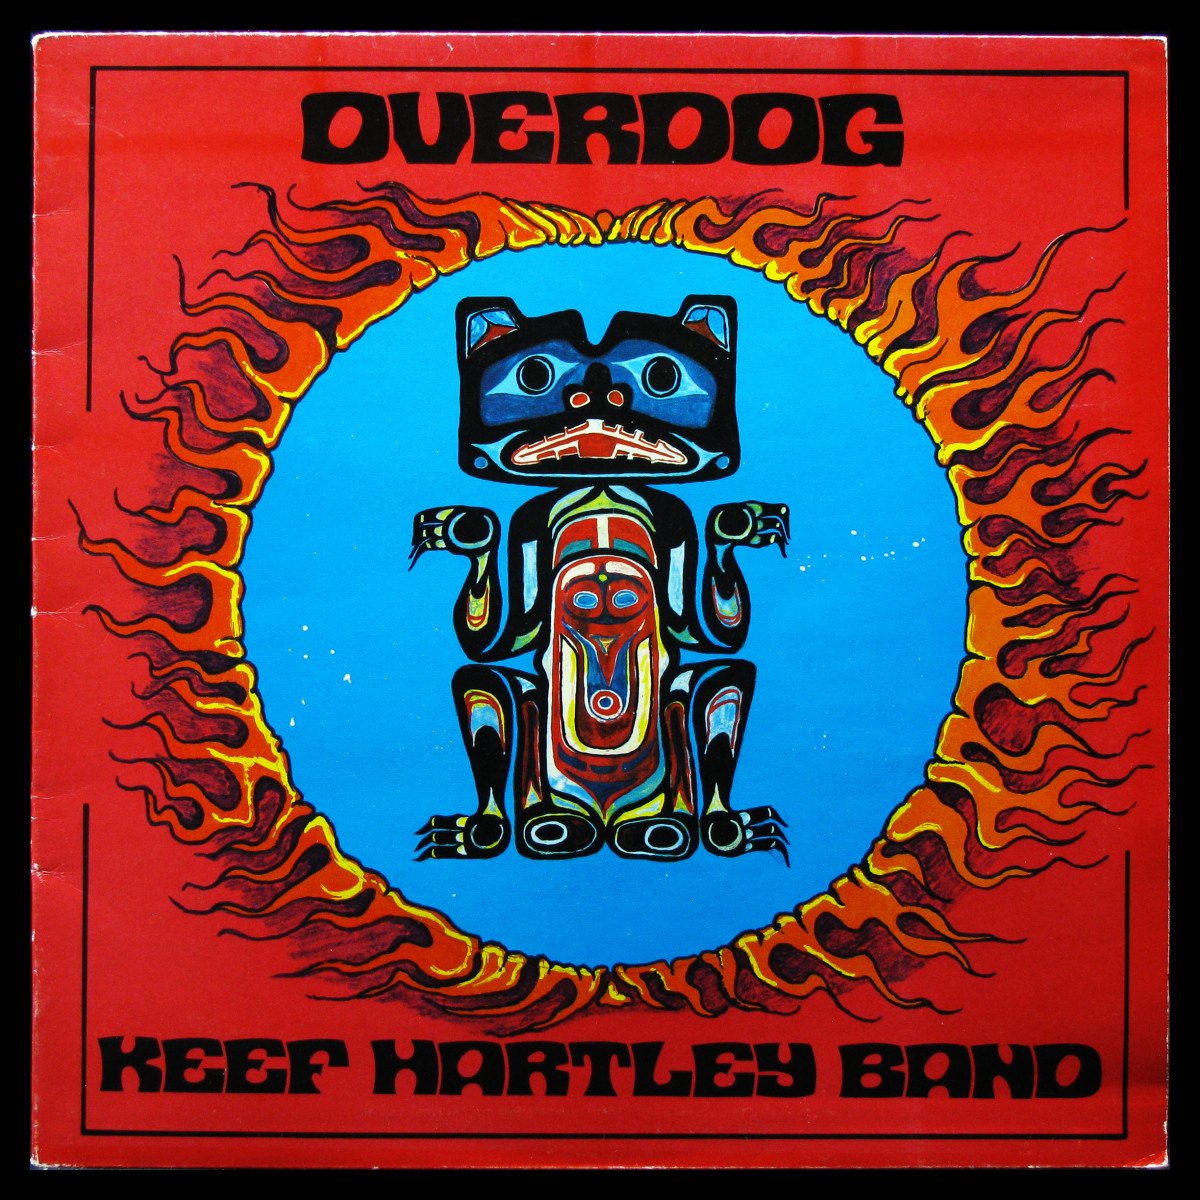 LP Keef Hartley Band — Overdog фото